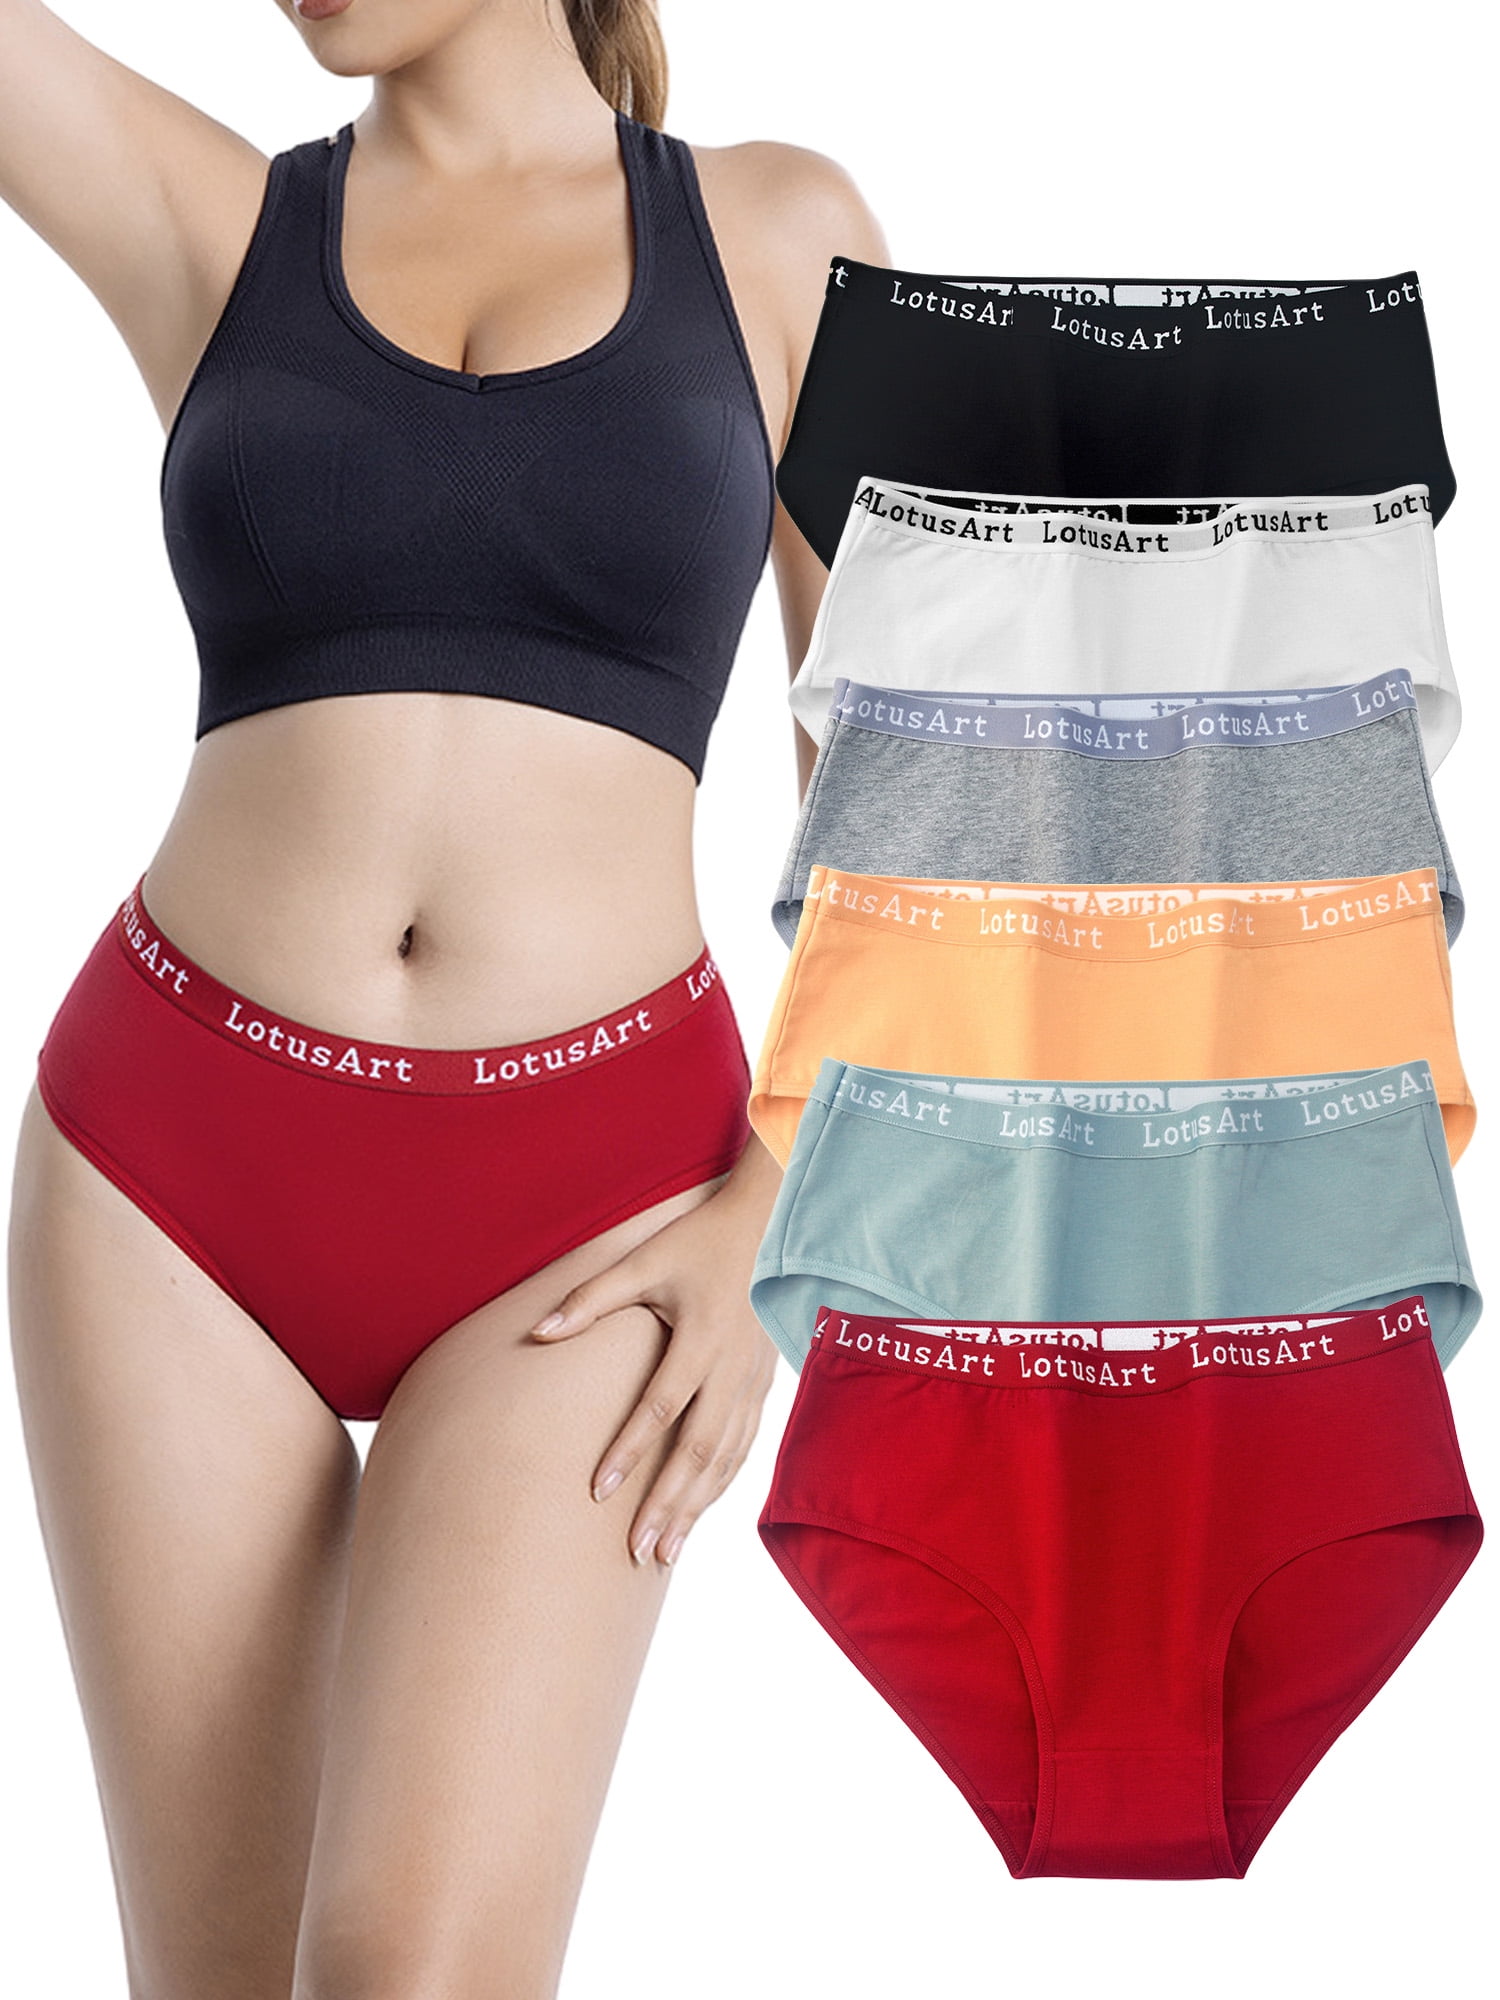 Hanes Women's Ribbed Cotton Brief Underwear, 6-Pack 